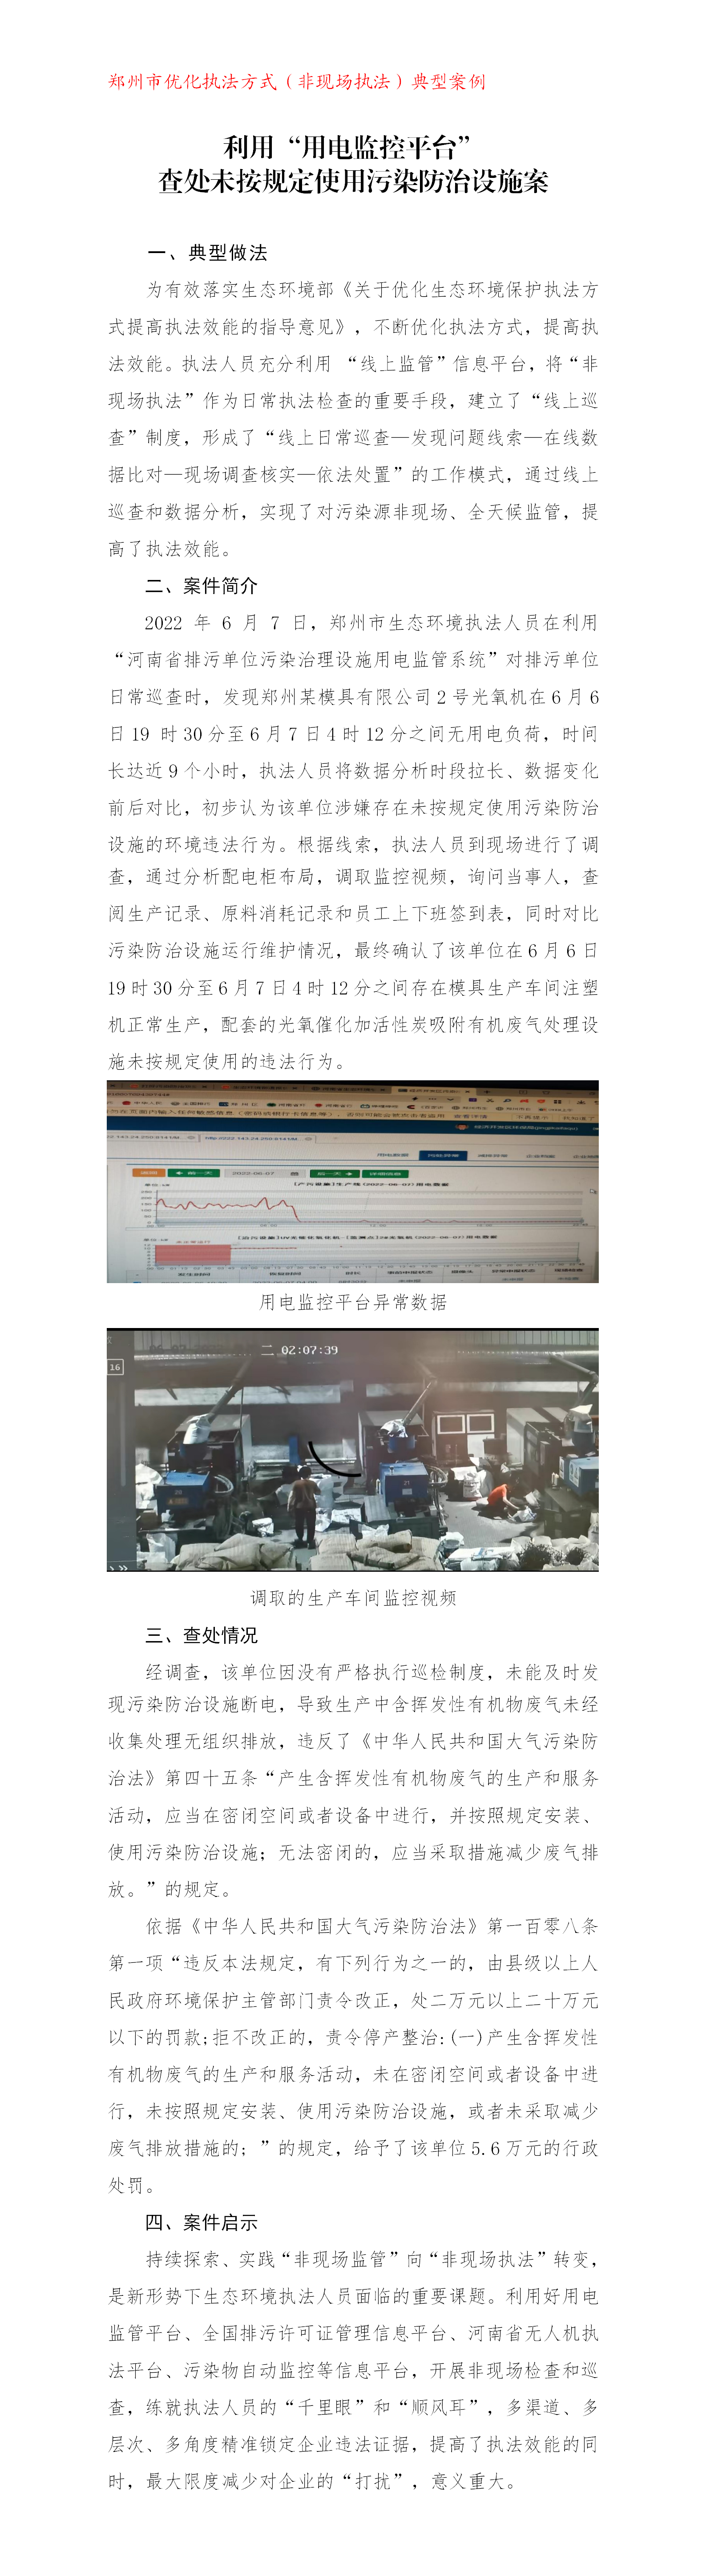 （黄军涛）郑州市生态环境局利用“用电监控平台”查处未按规定使用污染防治设施典型案例_01.png